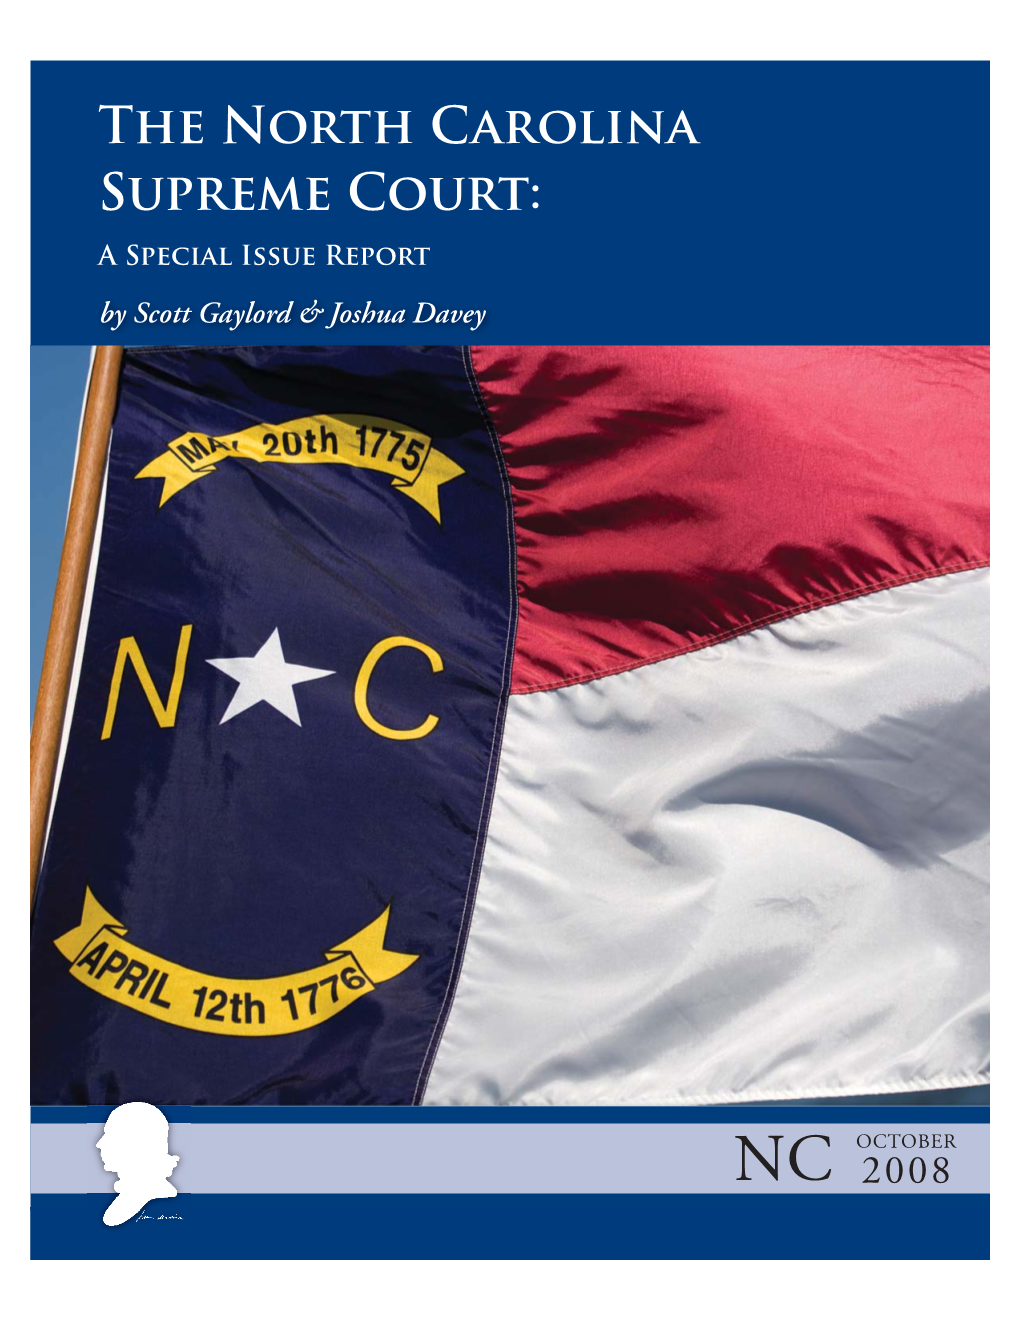 The North Carolina Supreme Court